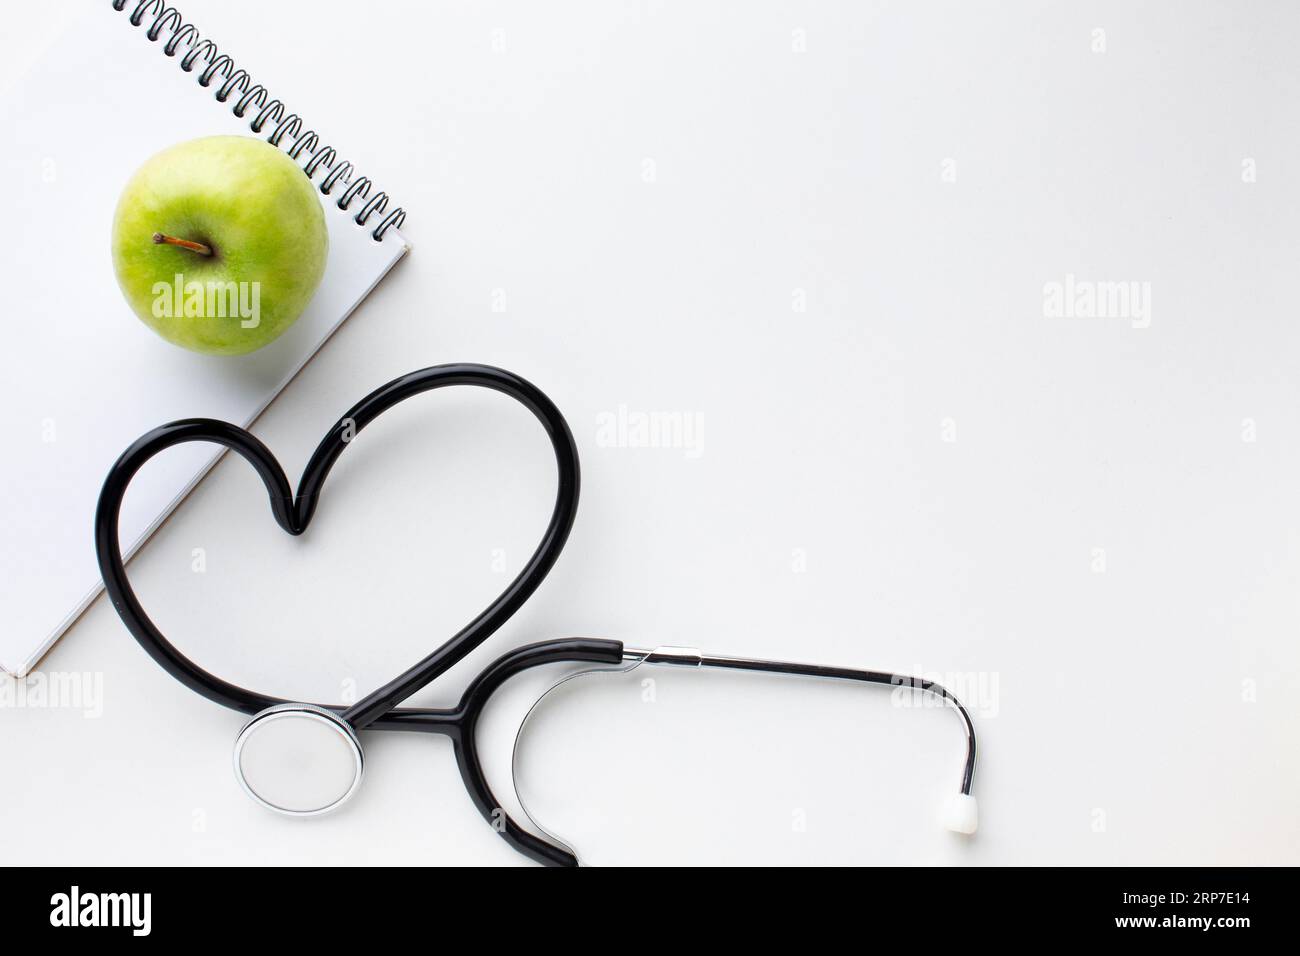 Grünes Apfel-Stethoskop mit Vorderansicht Stockfoto